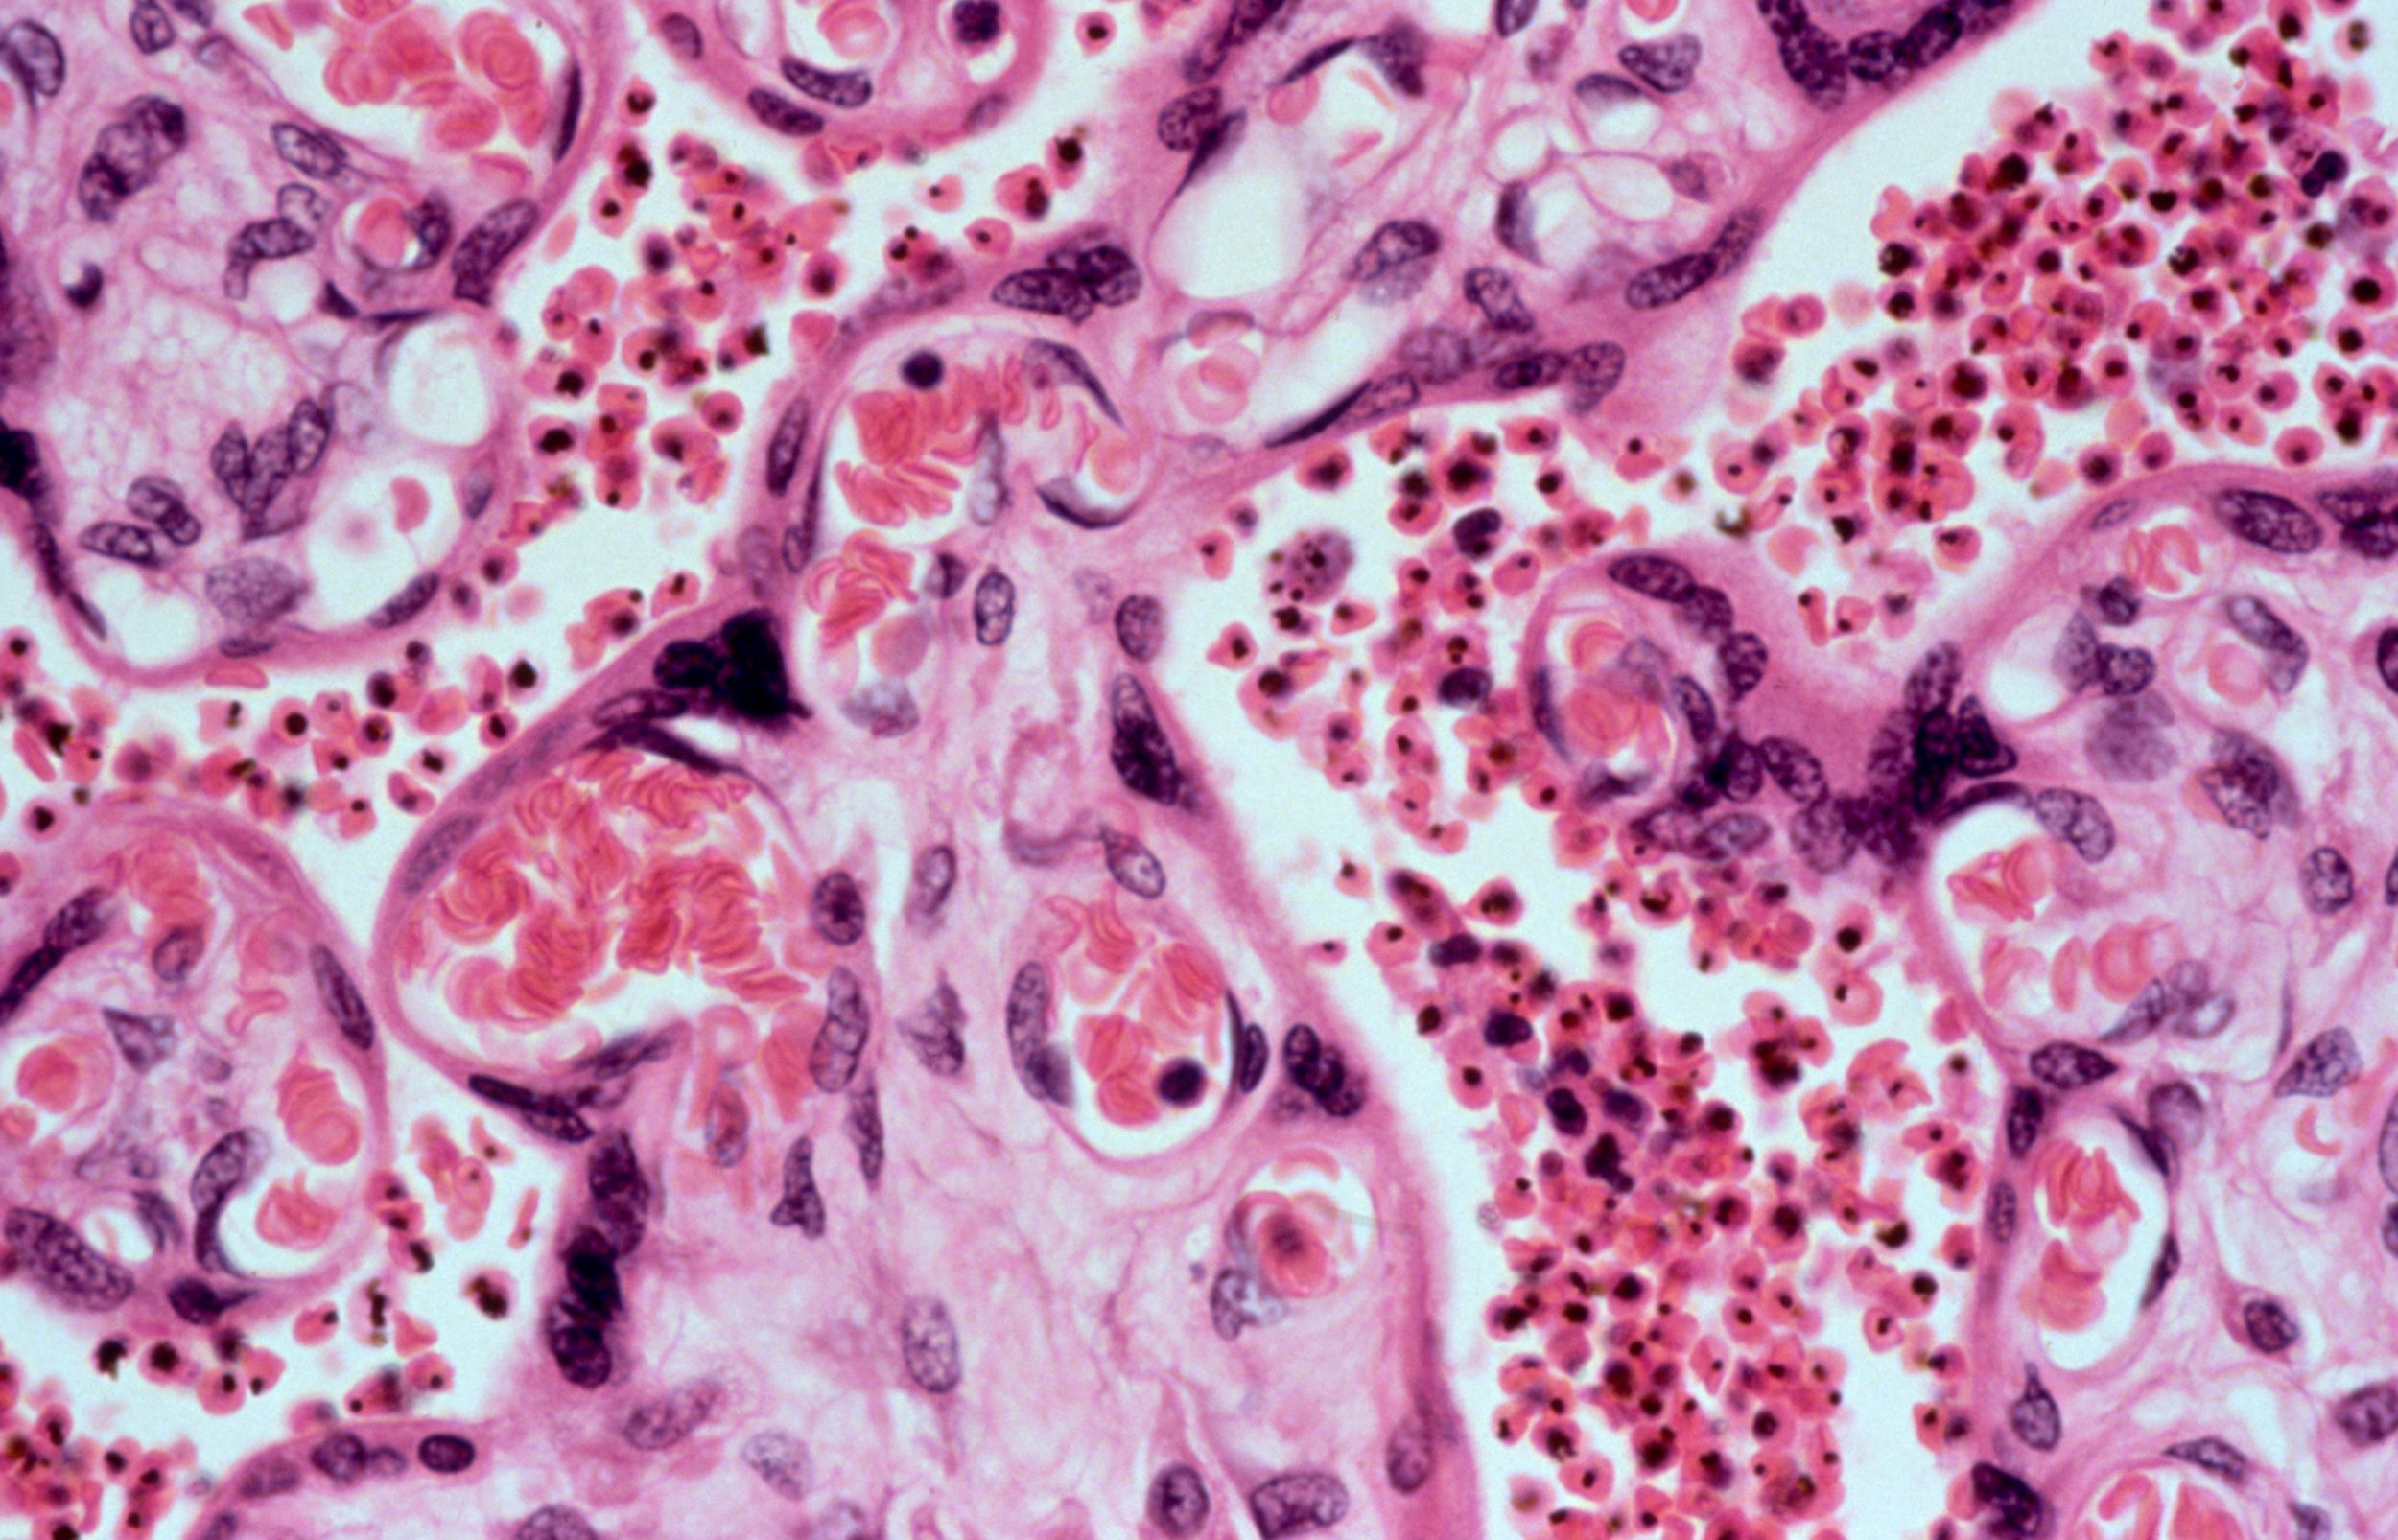 Plasmodium falciparum malaria: placenta.